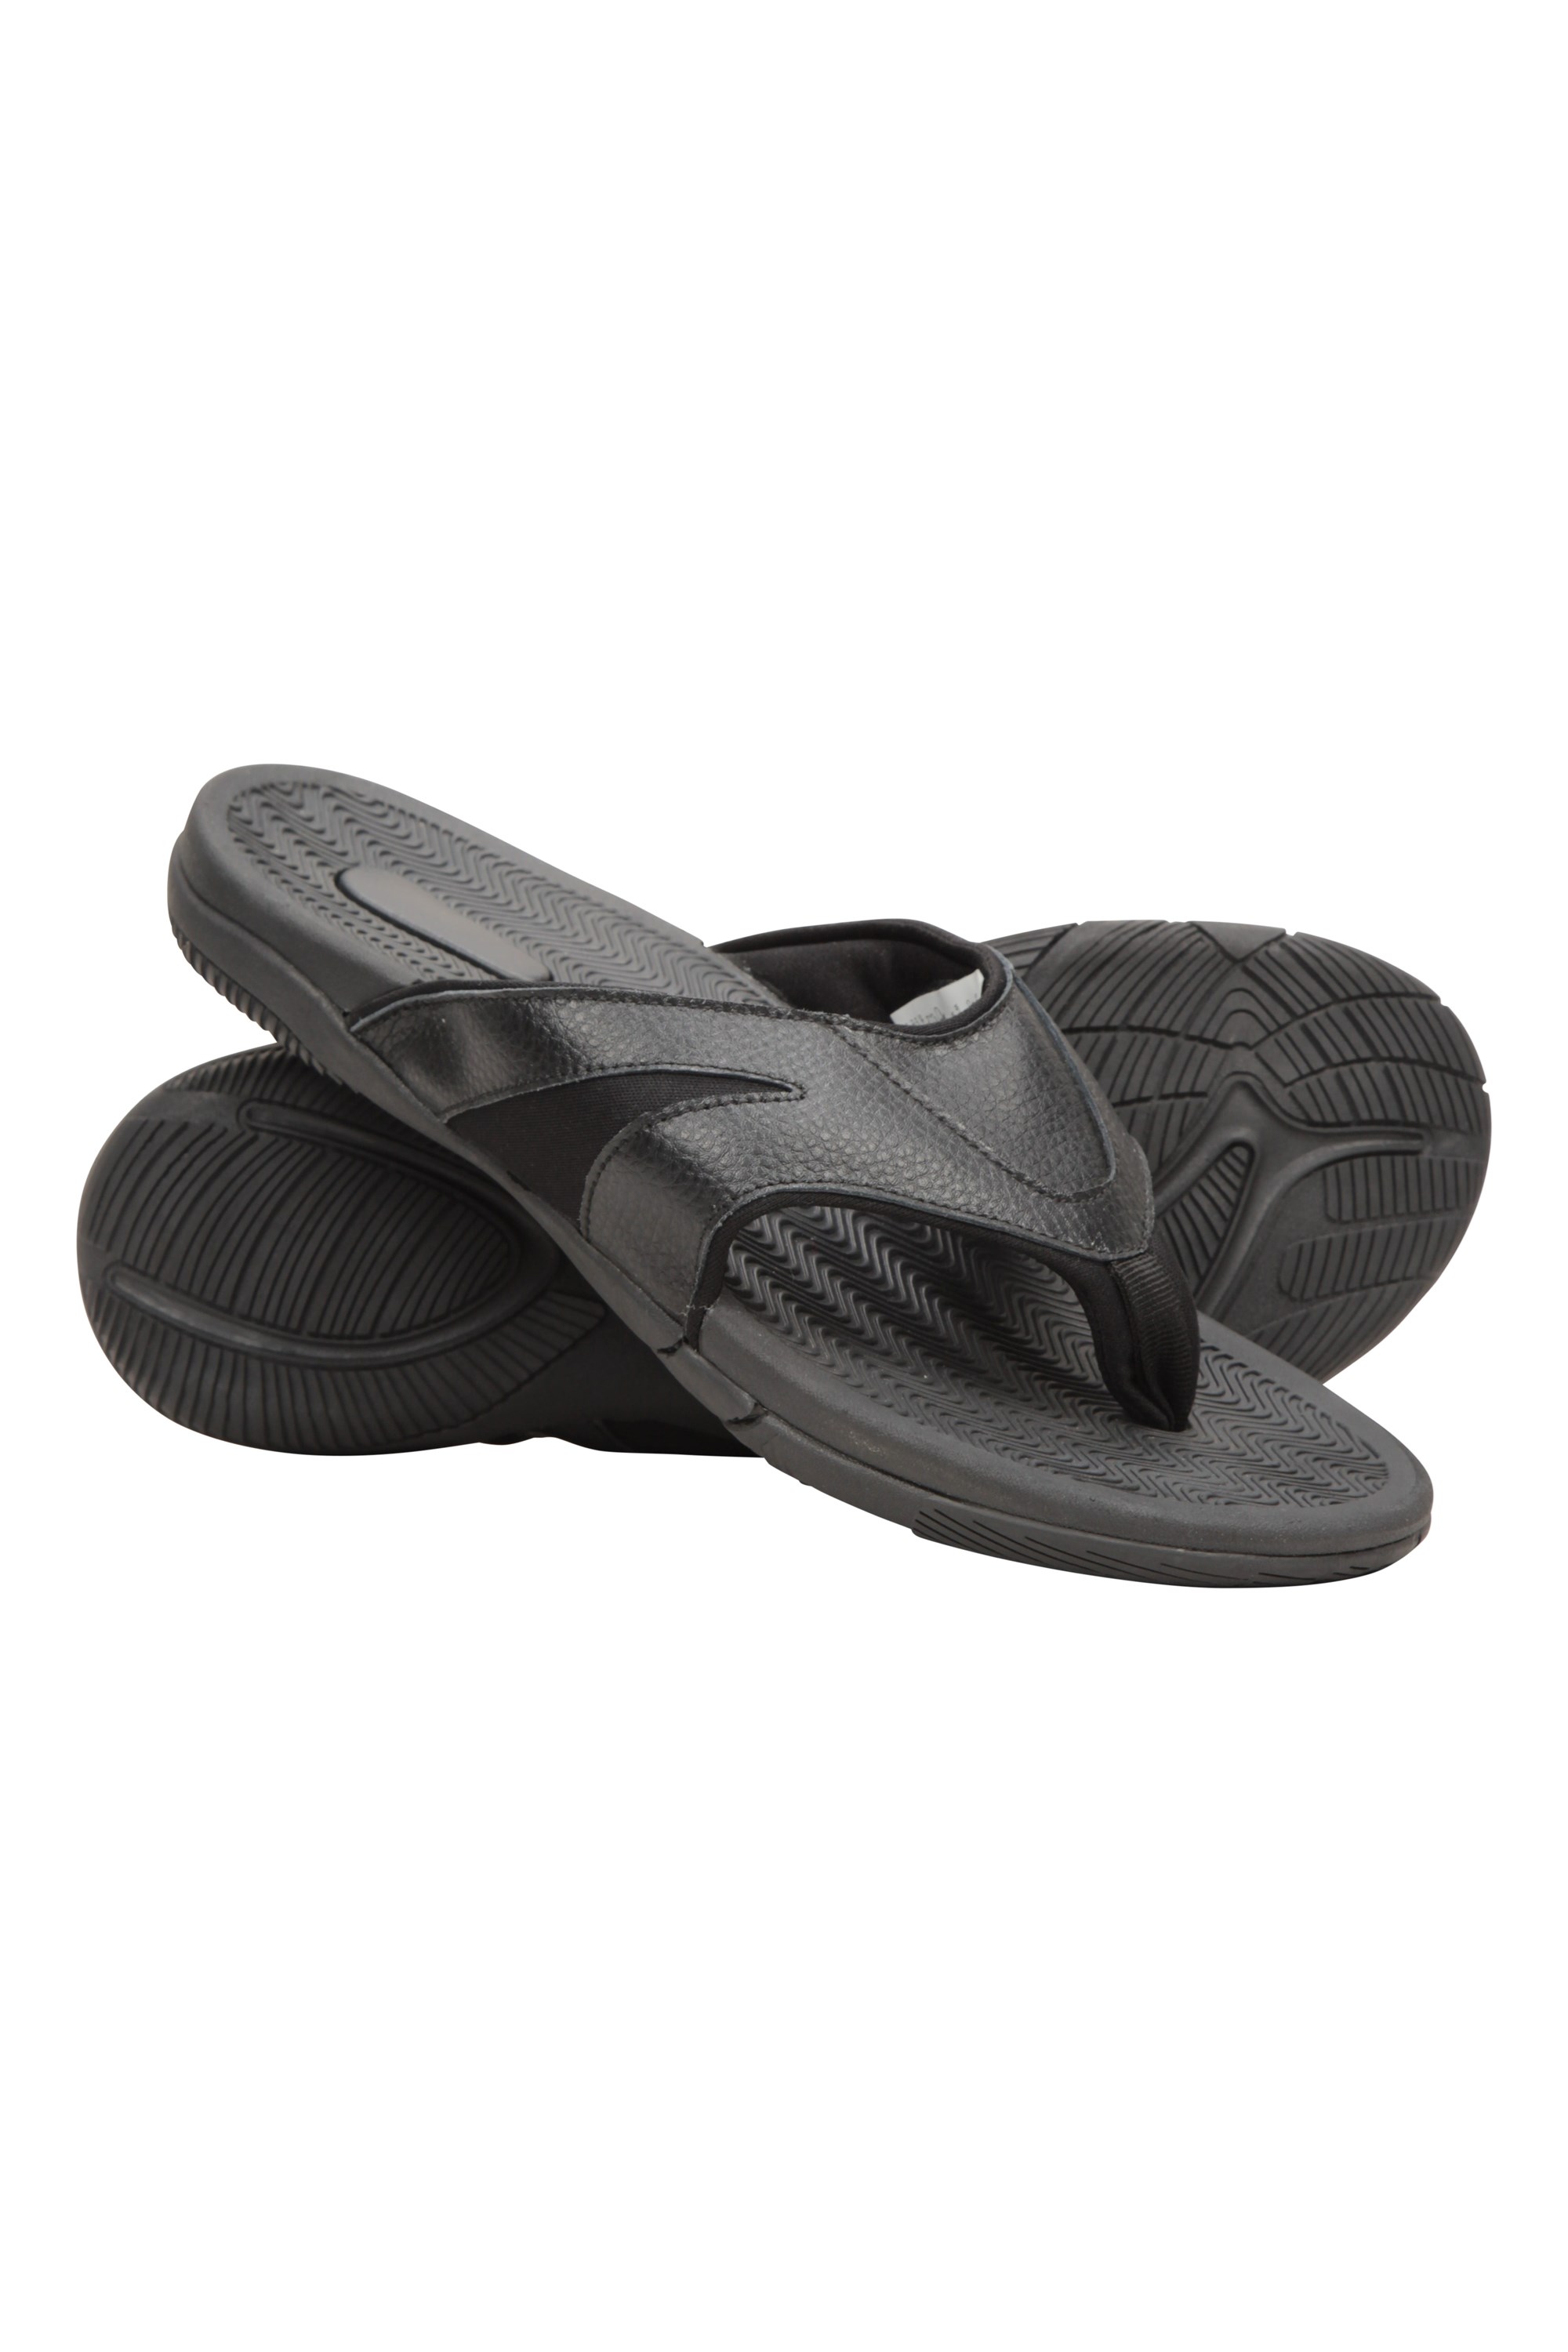 Mens Comfort Leather Flip Flops - Black